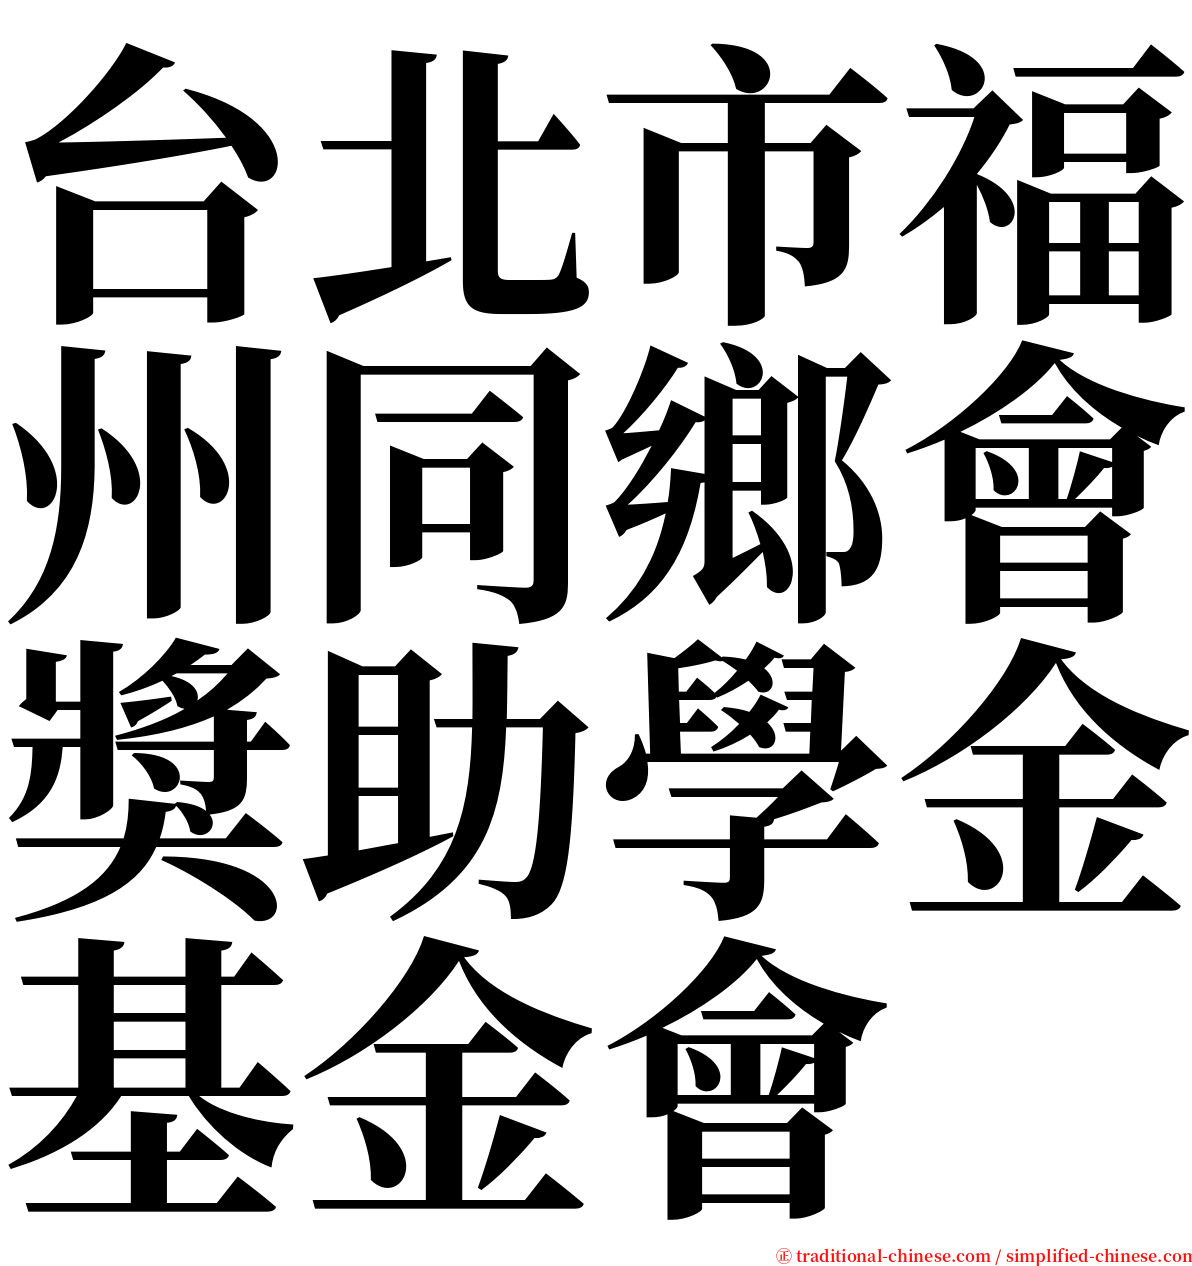 台北市福州同鄉會獎助學金基金會 serif font